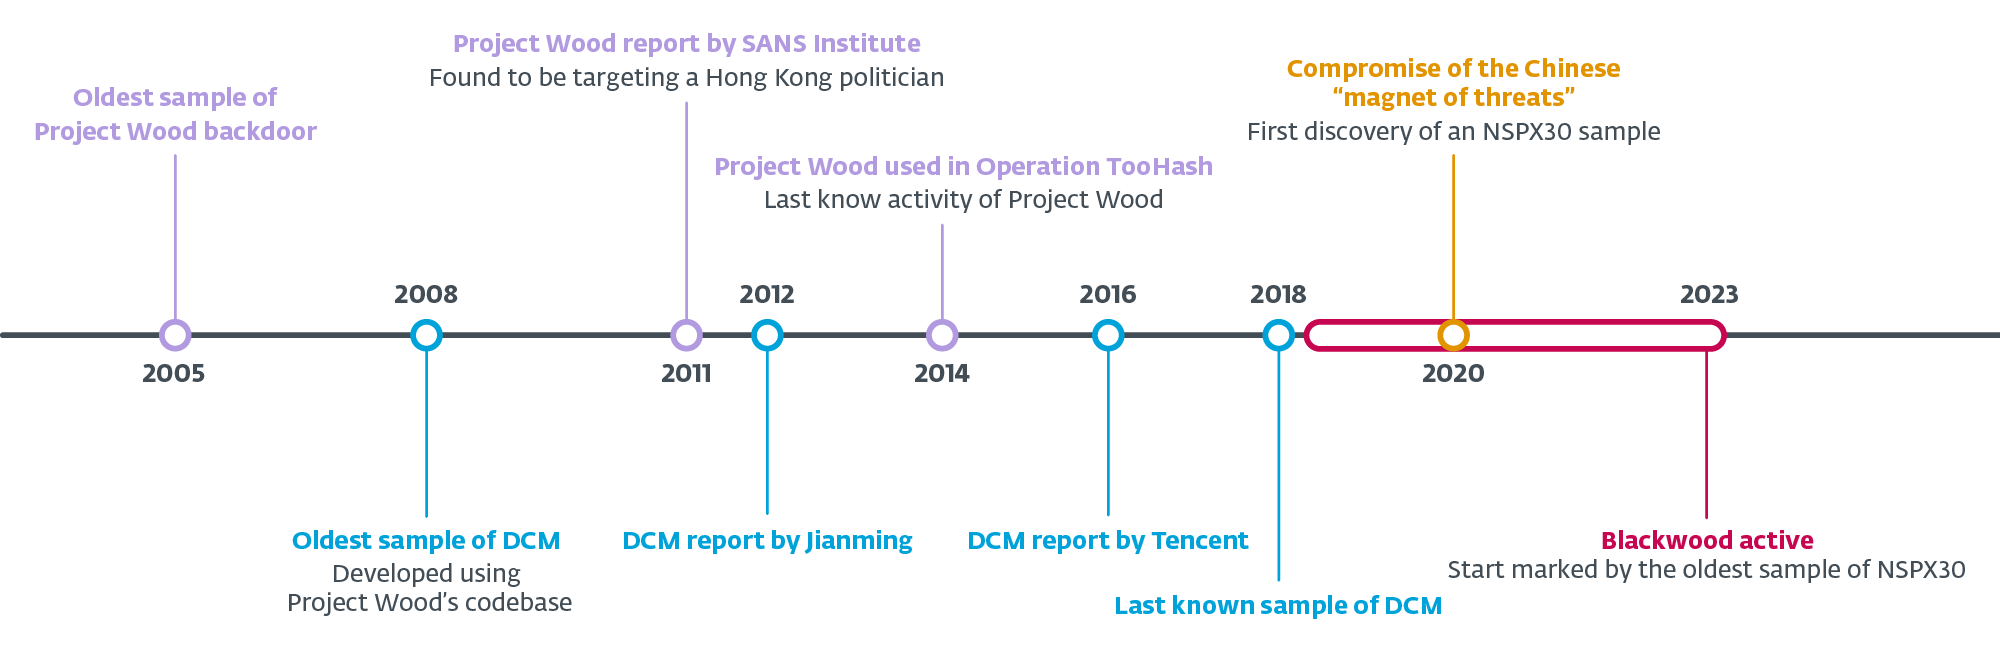 איור 2. ציר זמן של גרסאות עיקריות של Project Wood, DCM ו- NSPX30